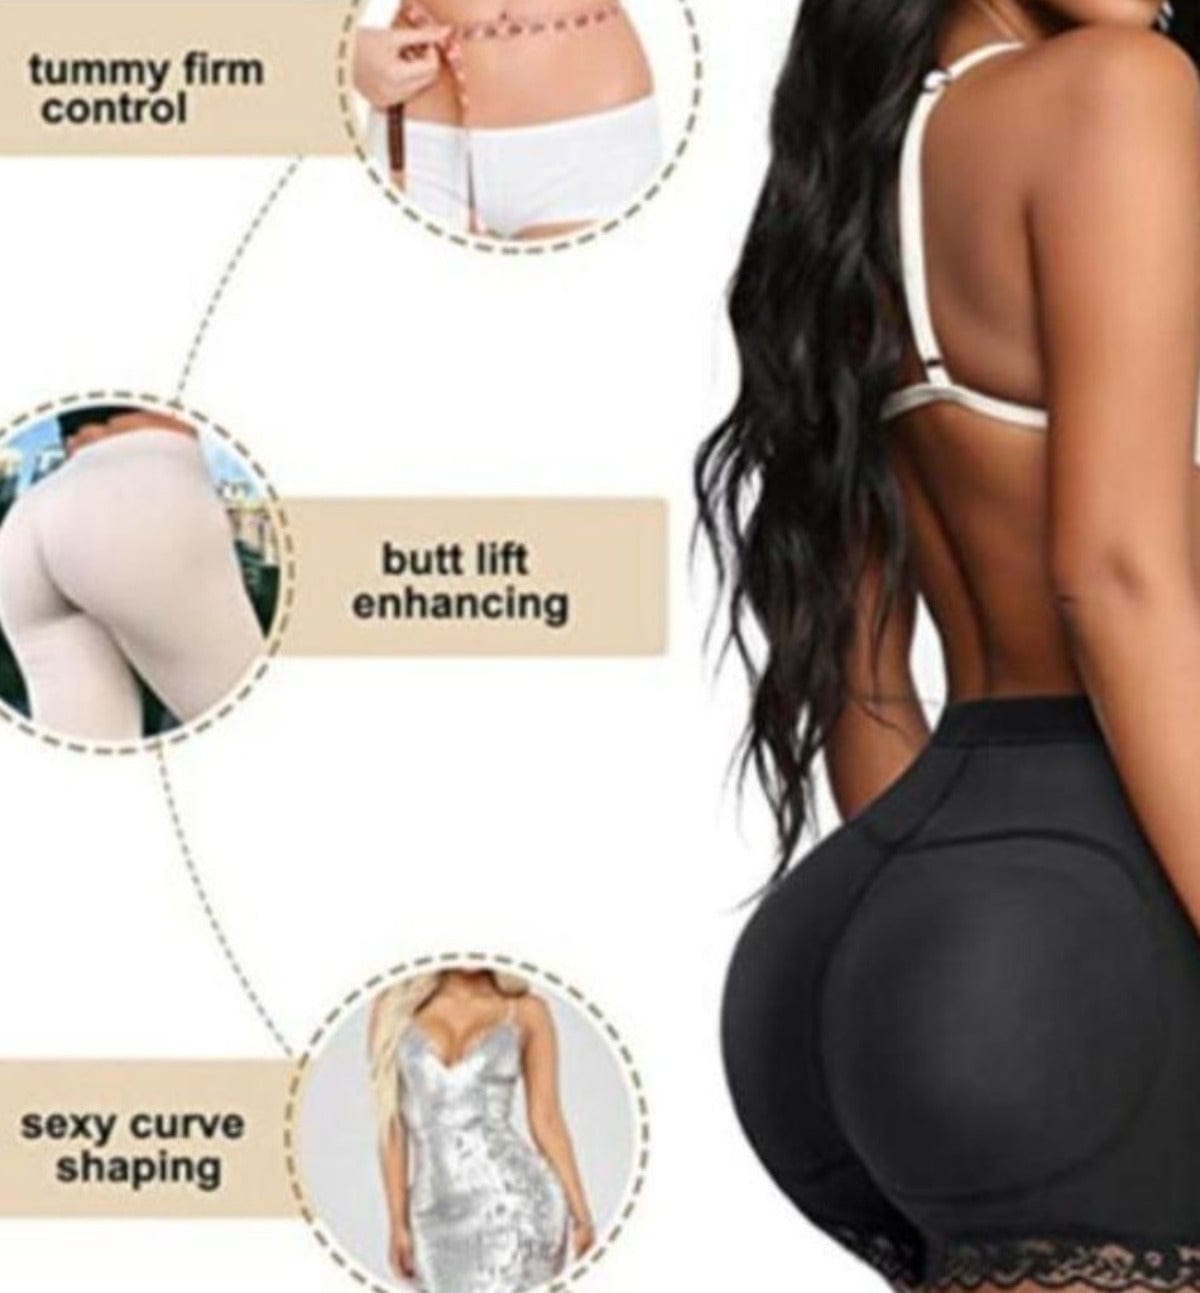 Body Shaper Women's Underwear Panties For Women Butt Shaper - Sculpify™️